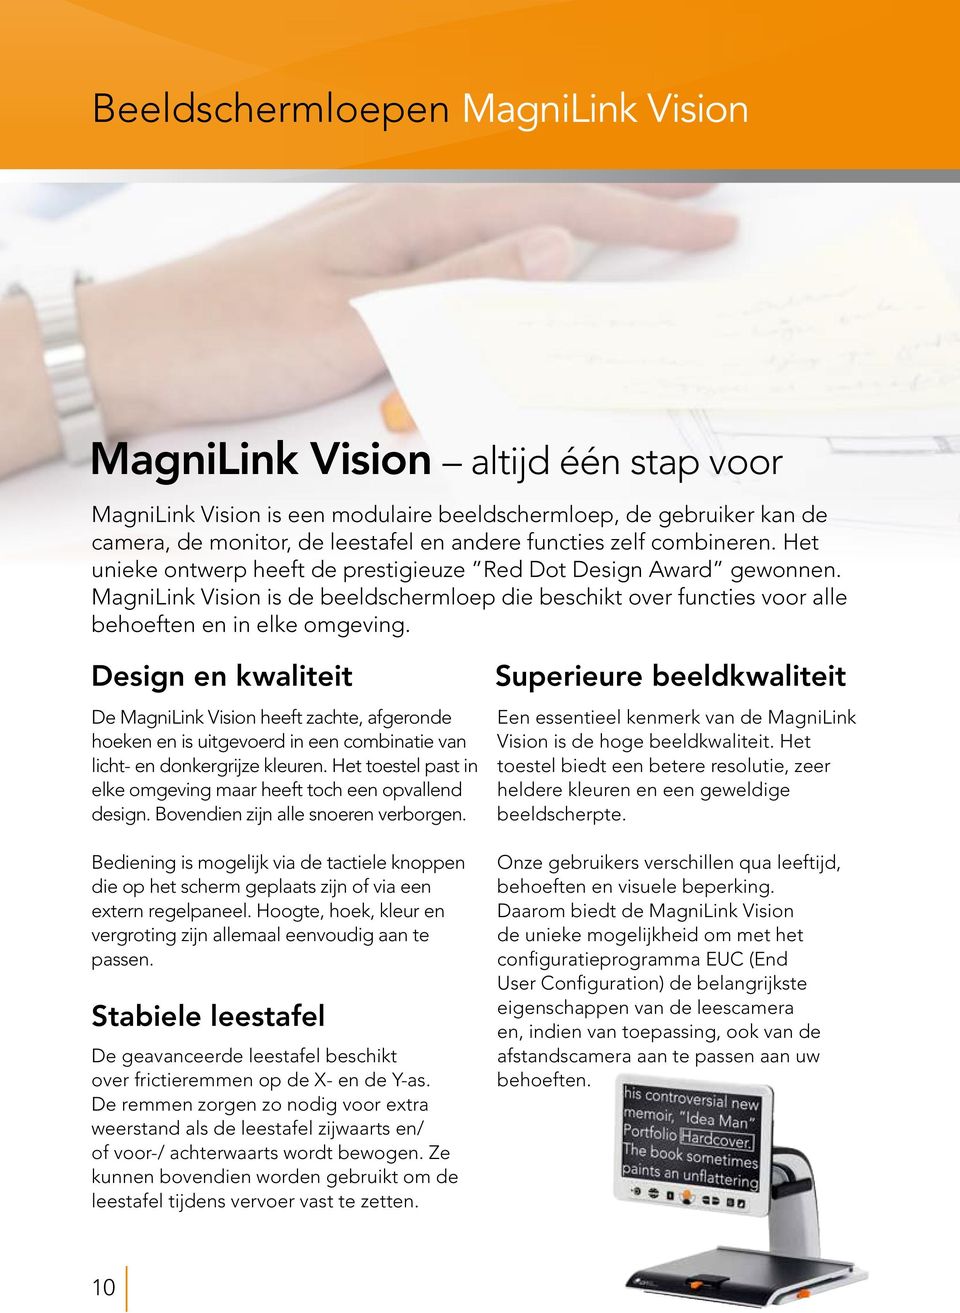 Design en kwaliteit De MagniLink Vision heeft zachte, afgeronde hoeken en is uitgevoerd in een combinatie van licht- en donkergrijze kleuren.